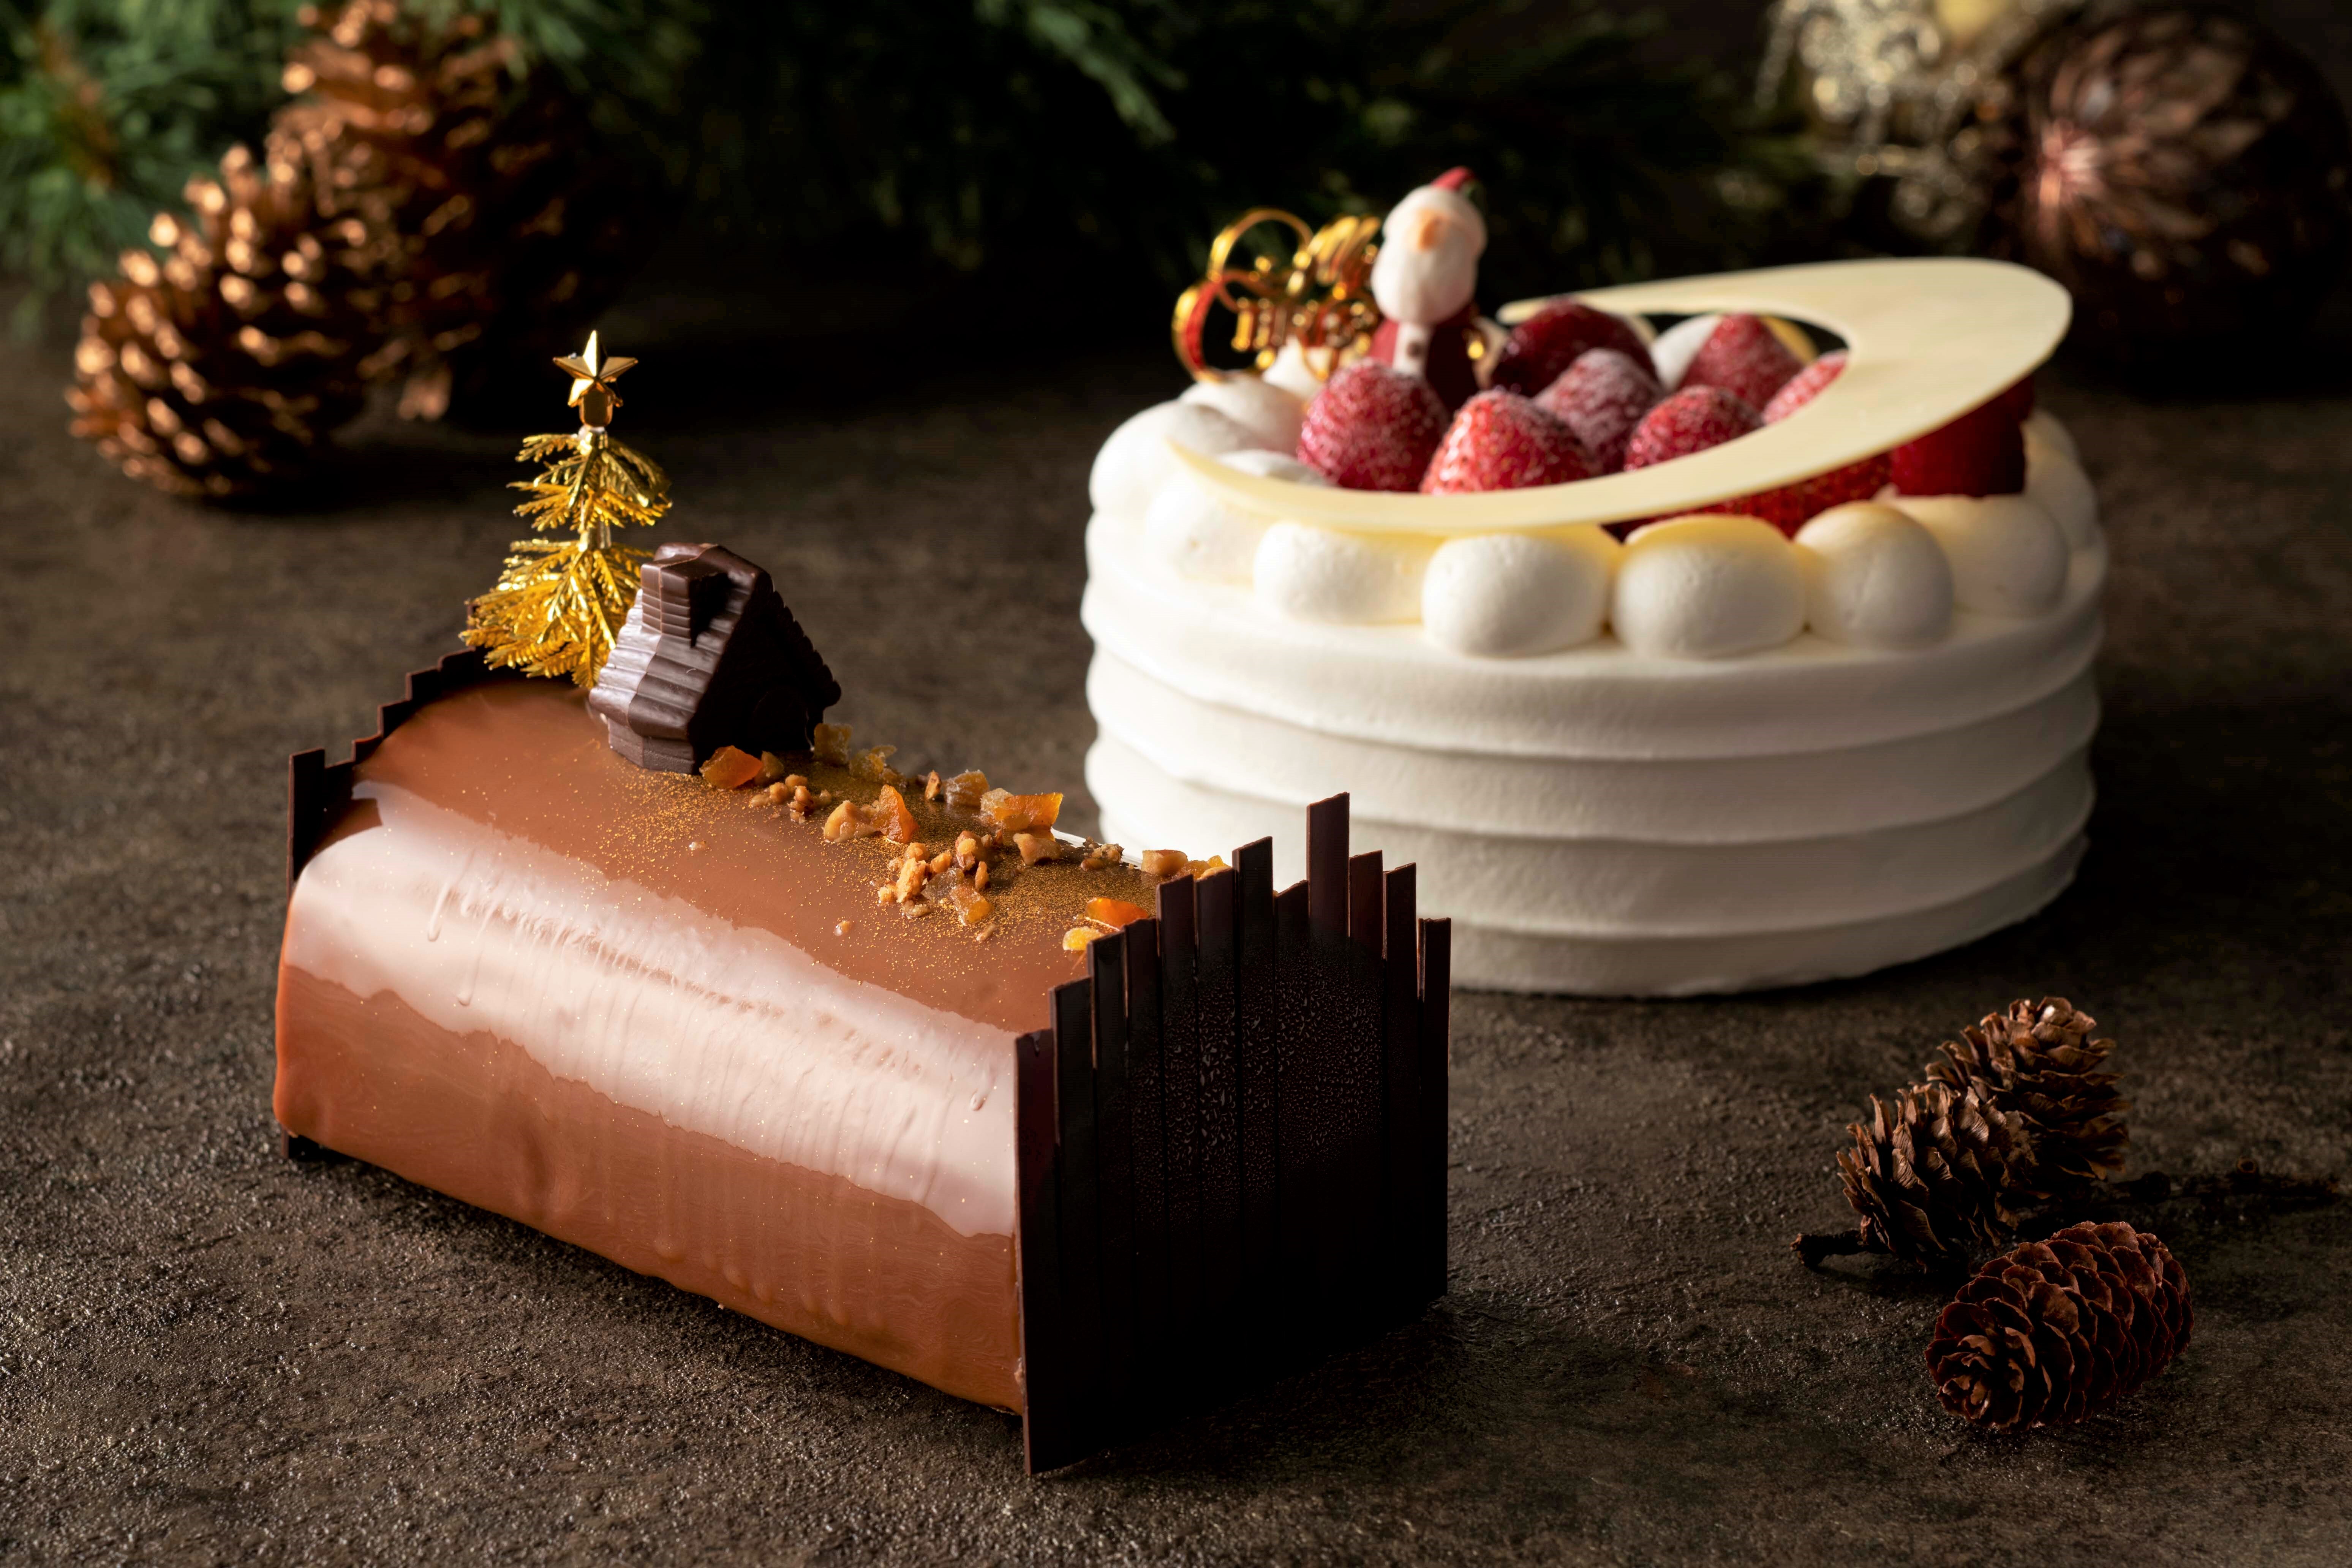 ヨコハマ グランド インターコンチネンタル ホテル 年 クリスマスケーキ4種とシュトーレンの予約受付を11月1日より開始 ヨコハマ グランド インターコンチネンタル ホテルのプレスリリース